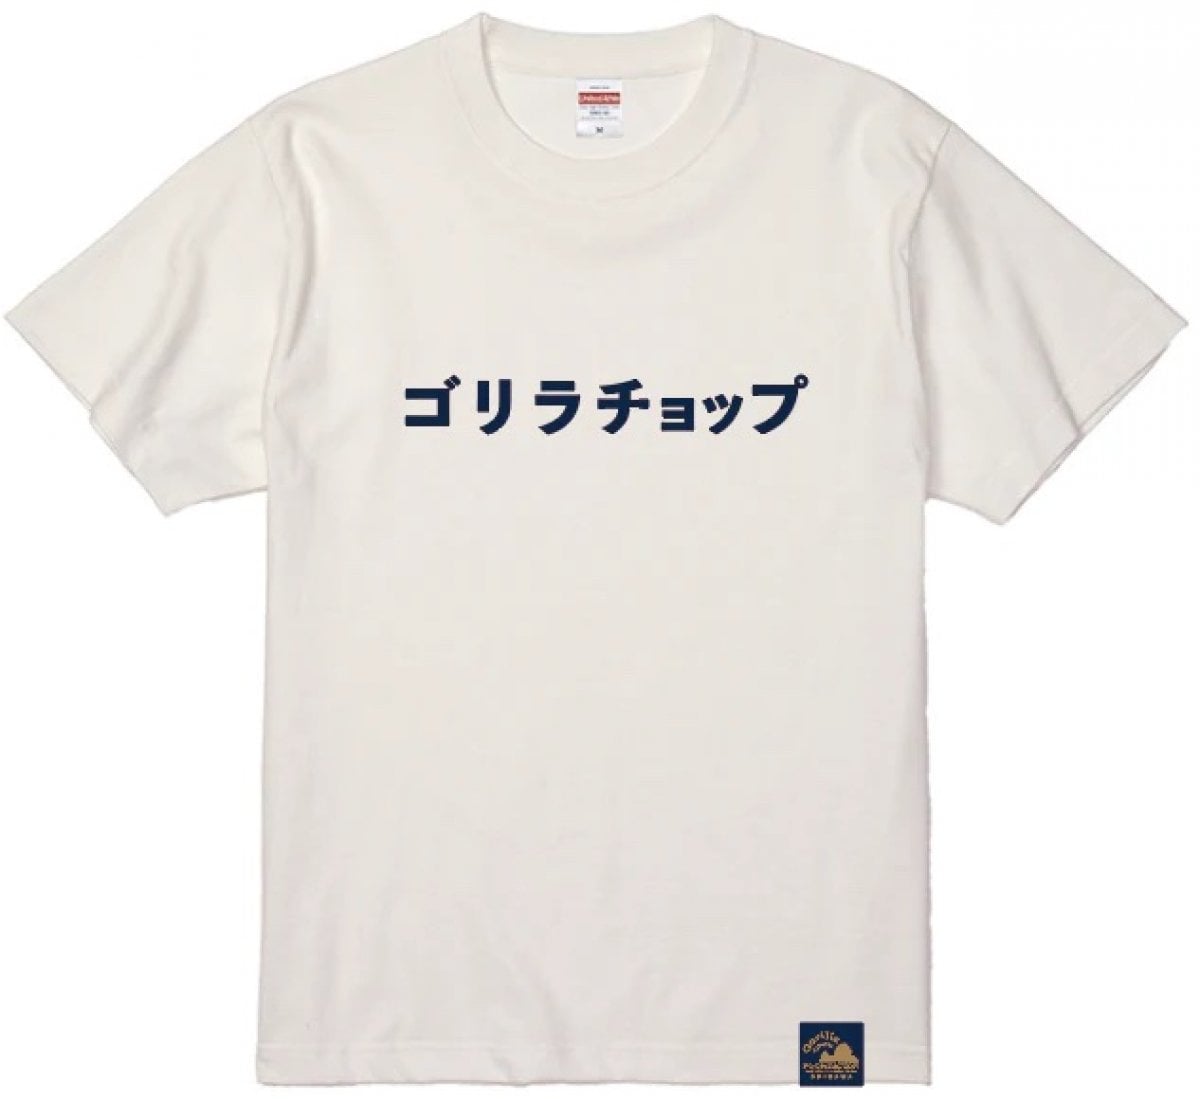 ゴリラチョップ半袖Tシャツ003